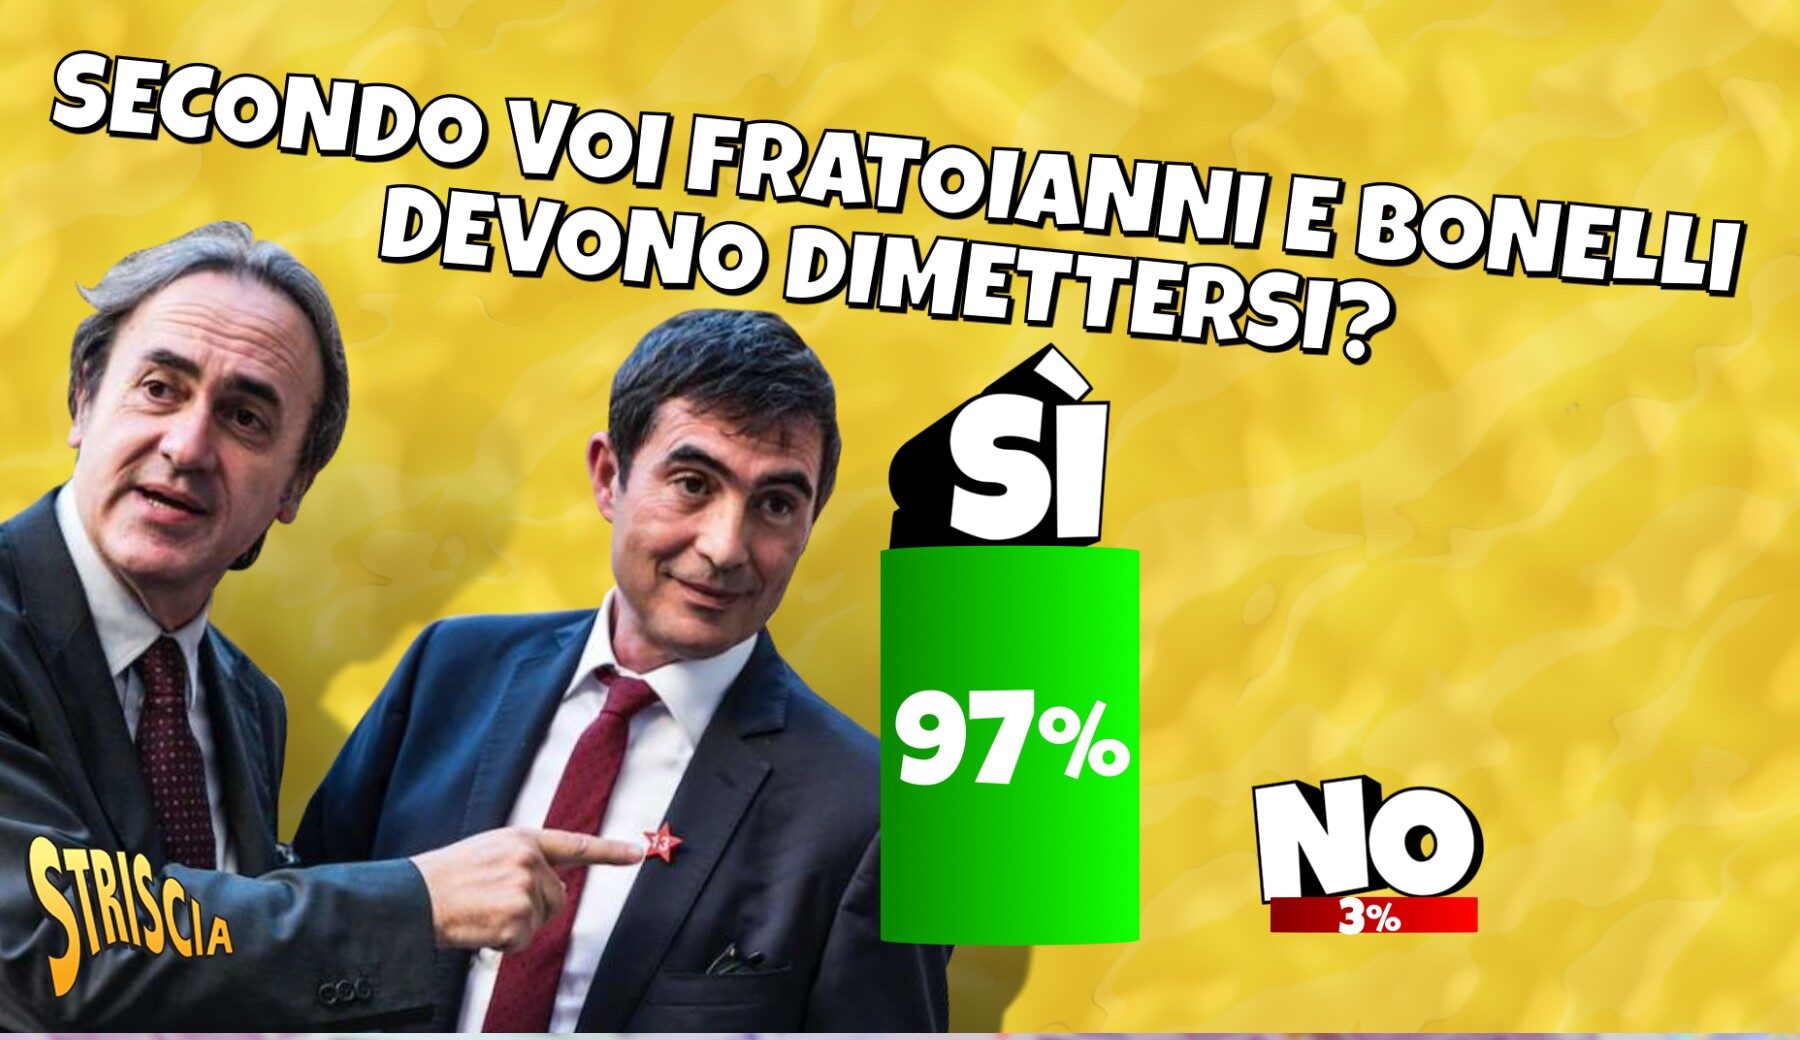 Ignorati gli avvertimenti su Soumahoro, Fratoianni e Bonelli devono dimettersi: il 97% vota sì al sondaggio del tg satirico